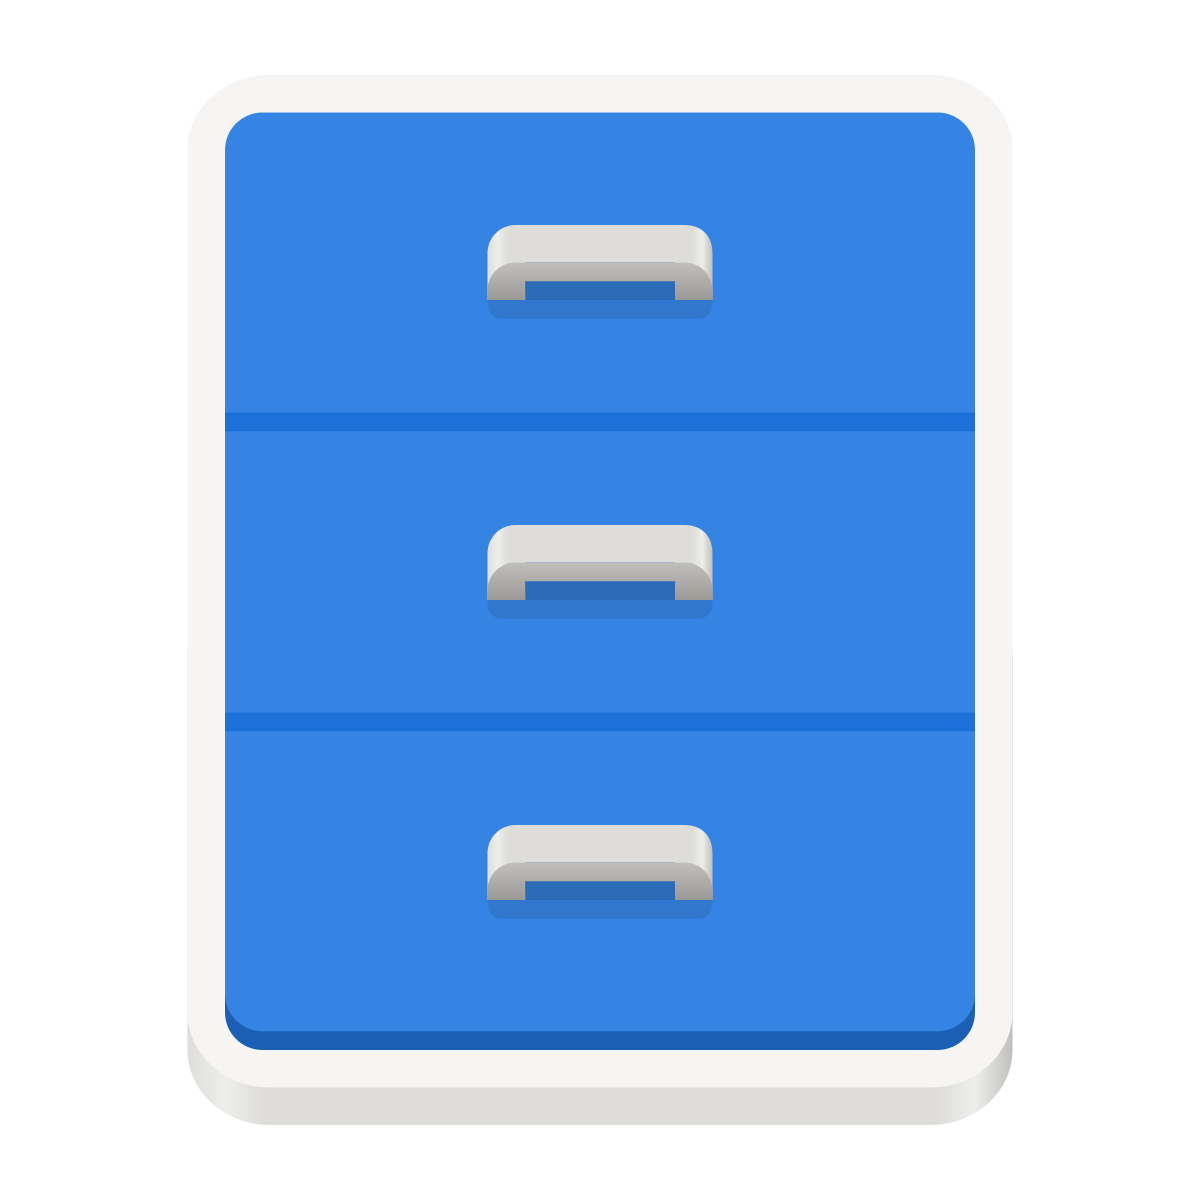 Download File:GNOME Files icon 2019.svg - Wikimedia Commons